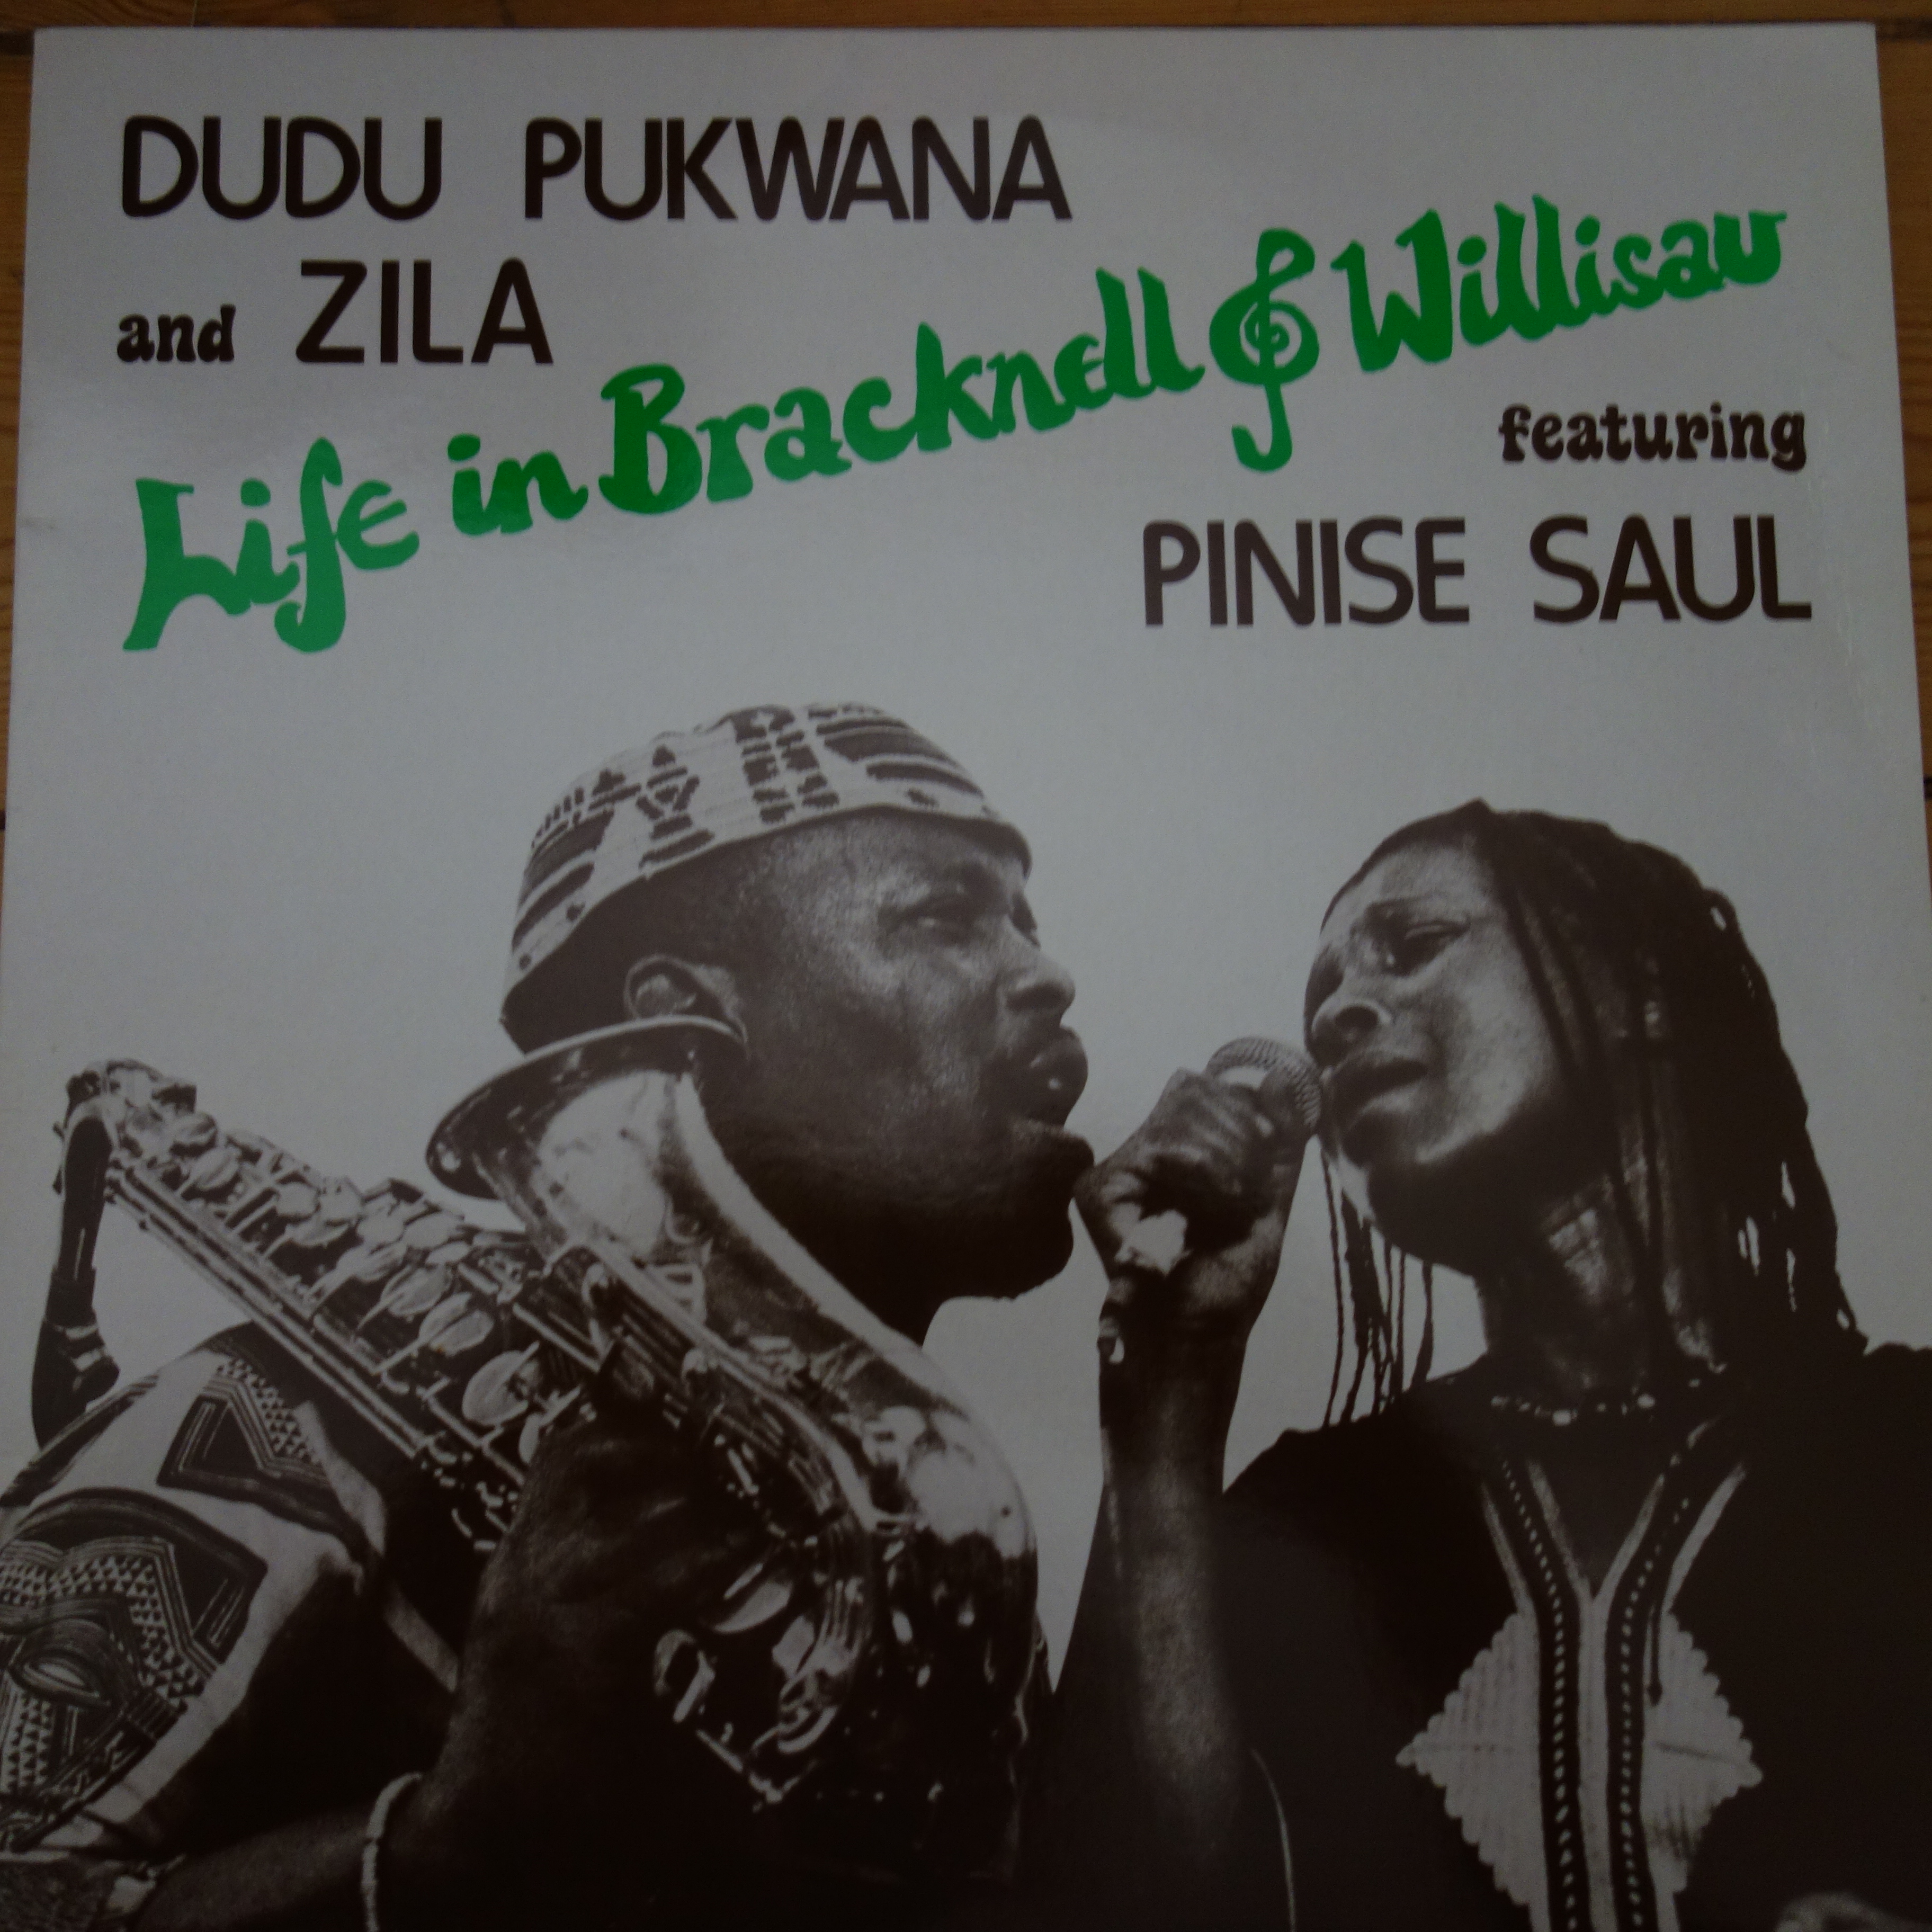 ZL 2 Dudu Pukwana and Zila Life in Bracknell & Willisau